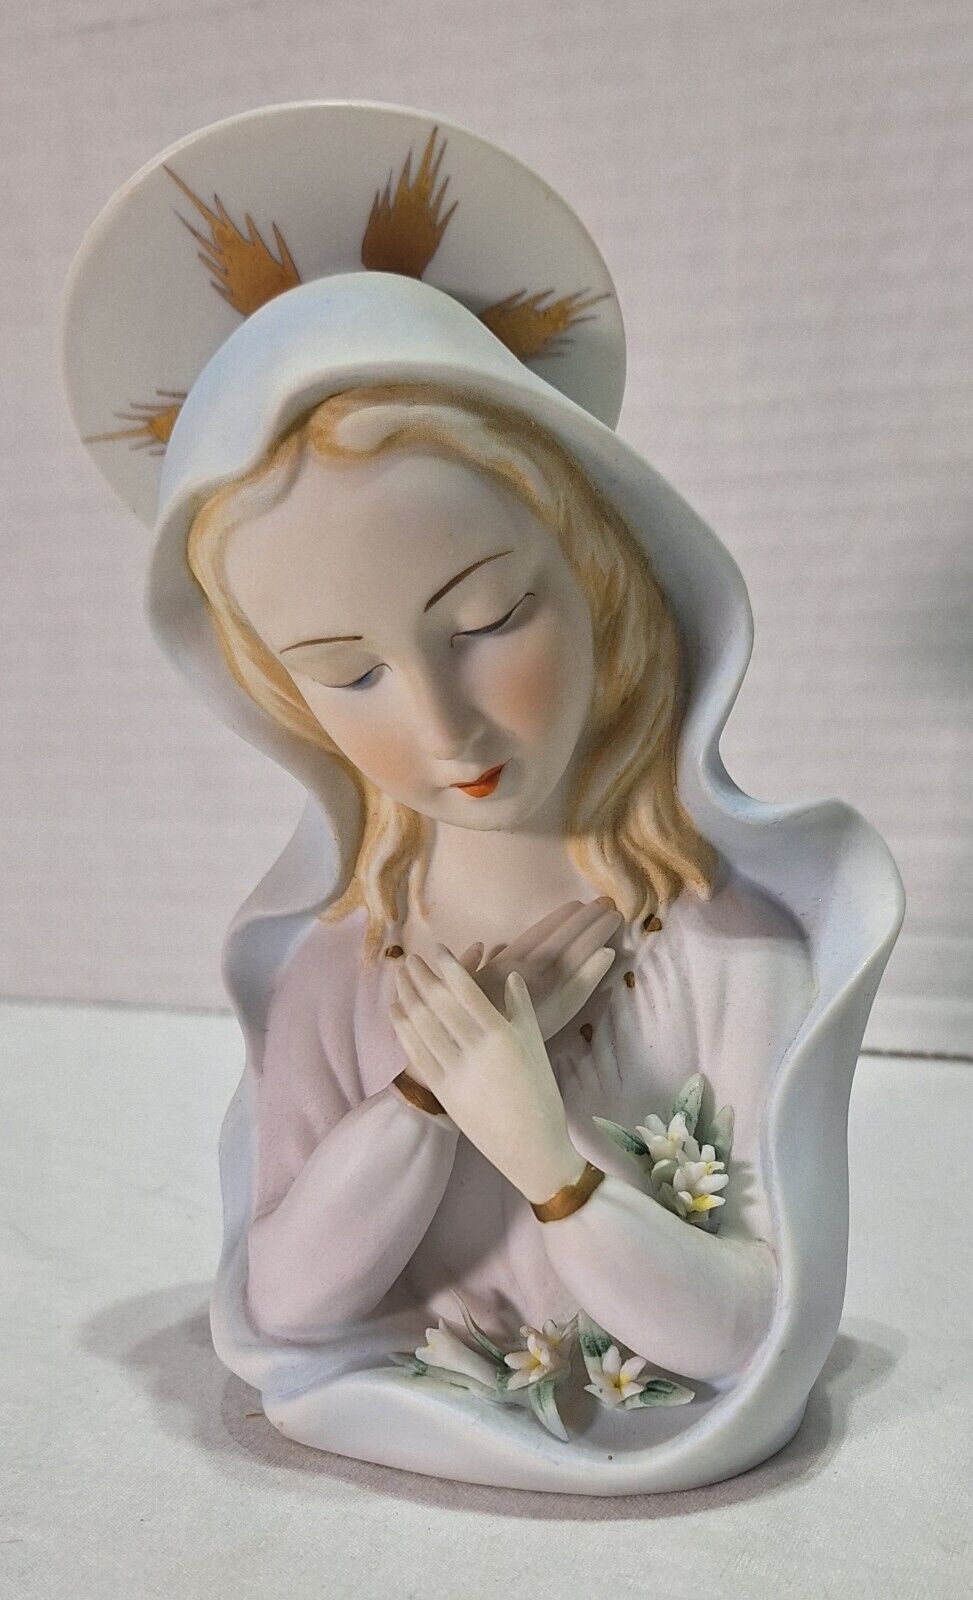 Lefton figurine Madonna ceramic bisque KW1462 6x3